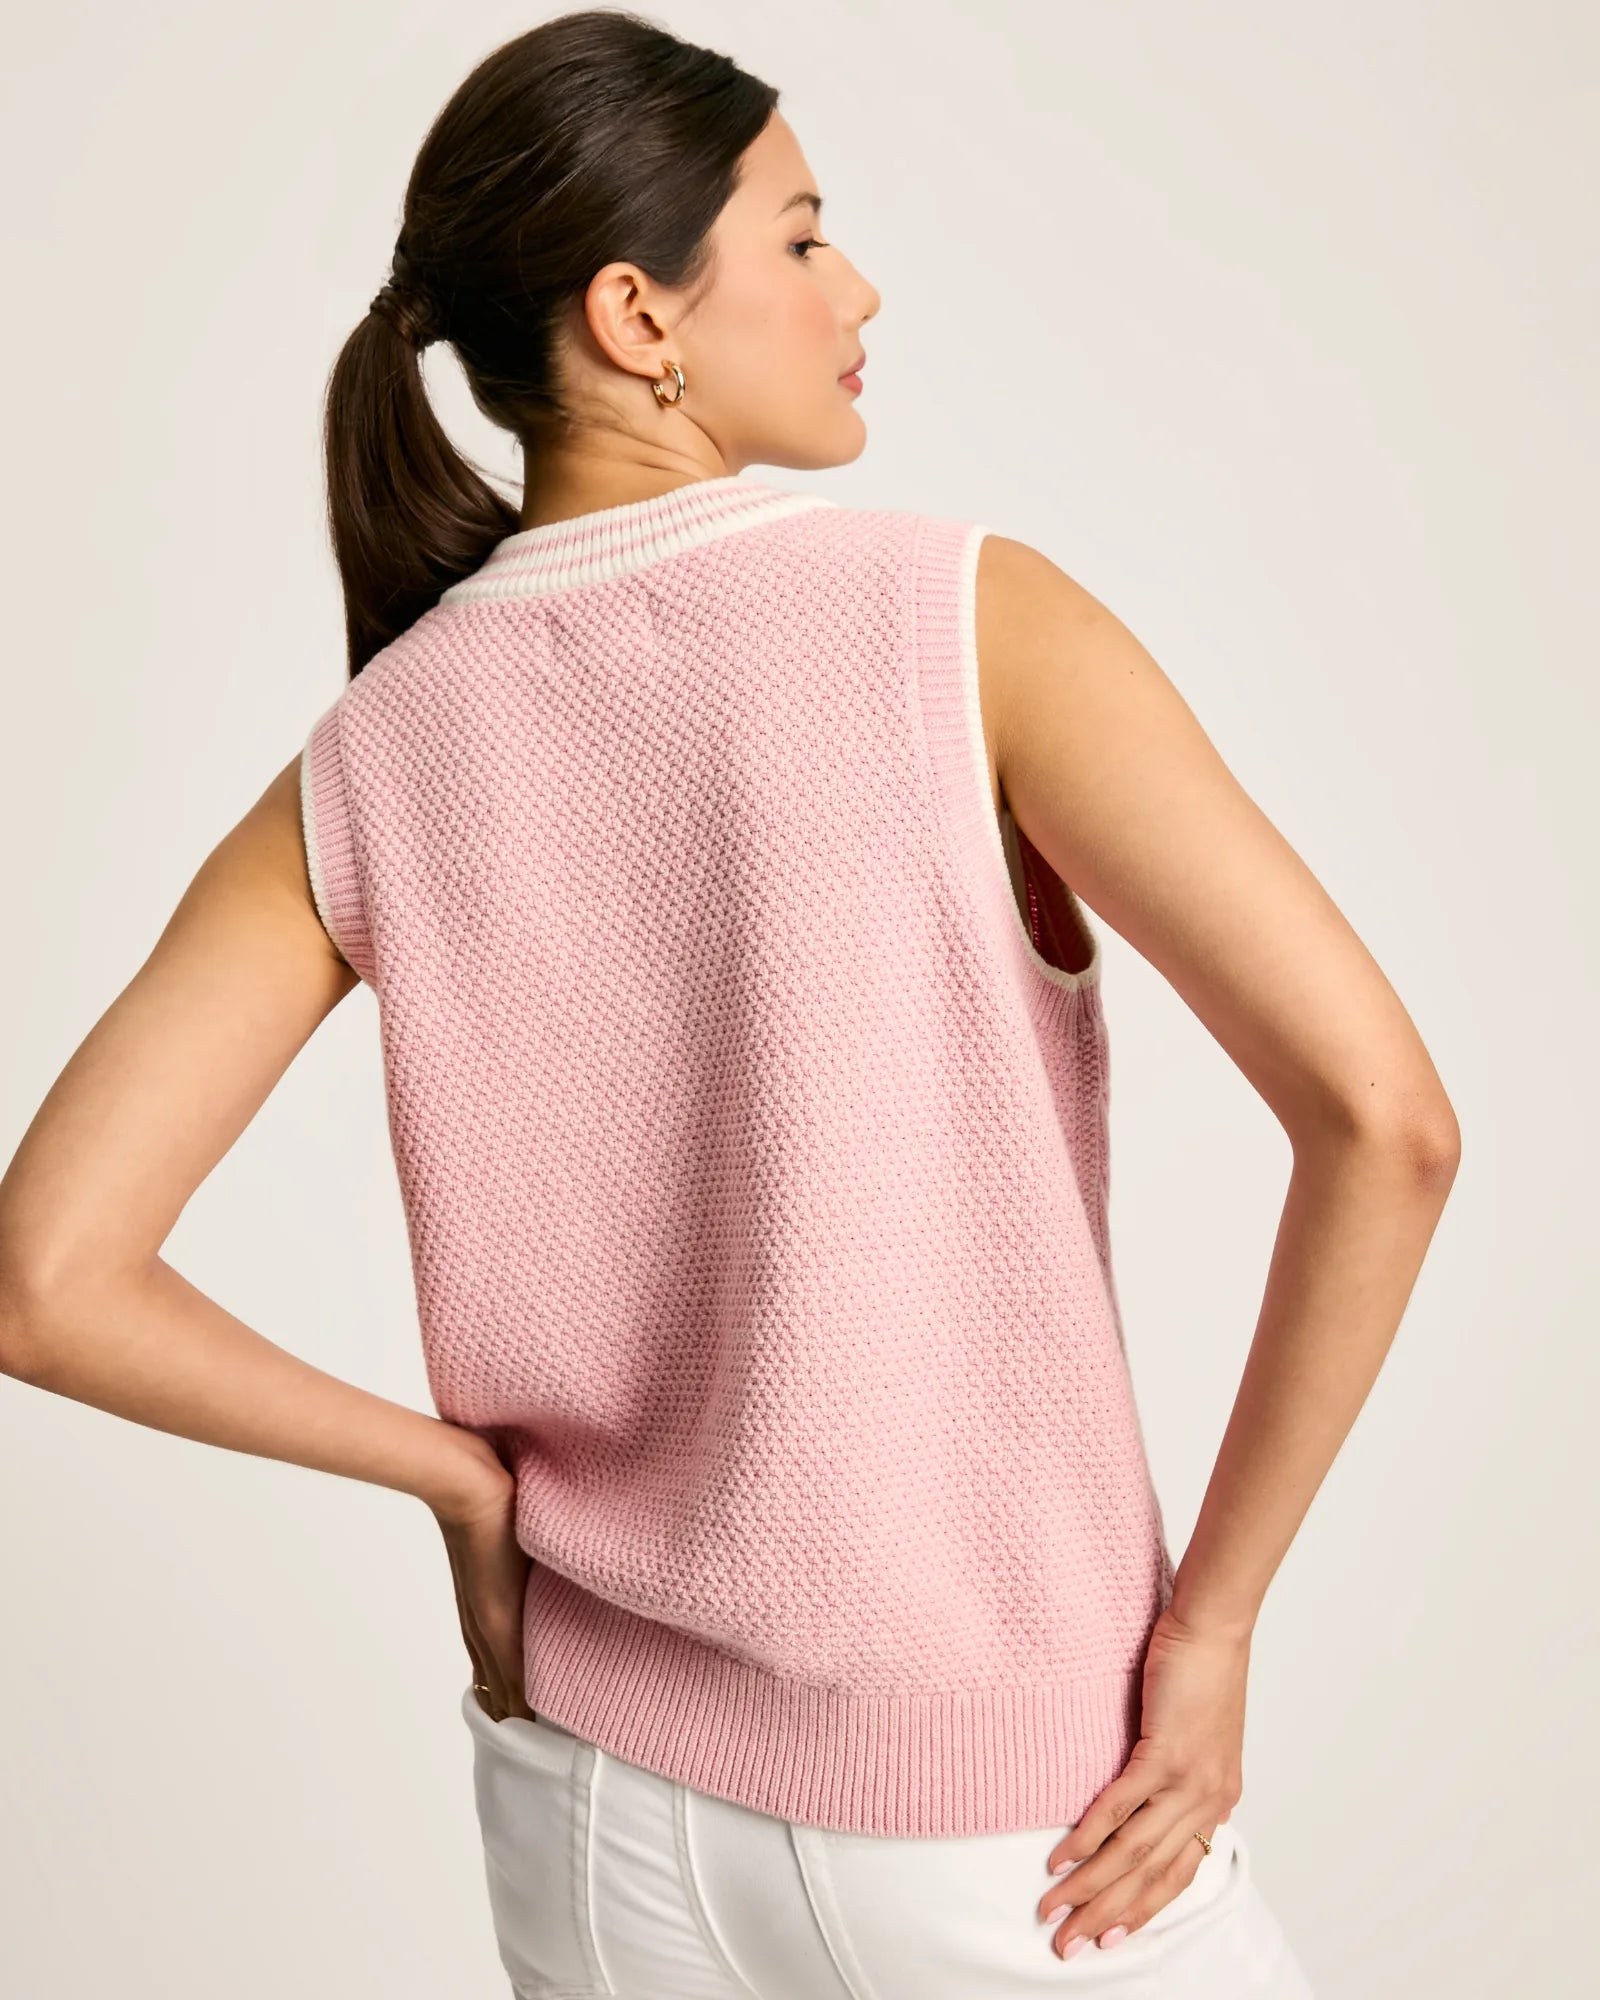 Deuce Pink Cable Knitted V-Neck Vest